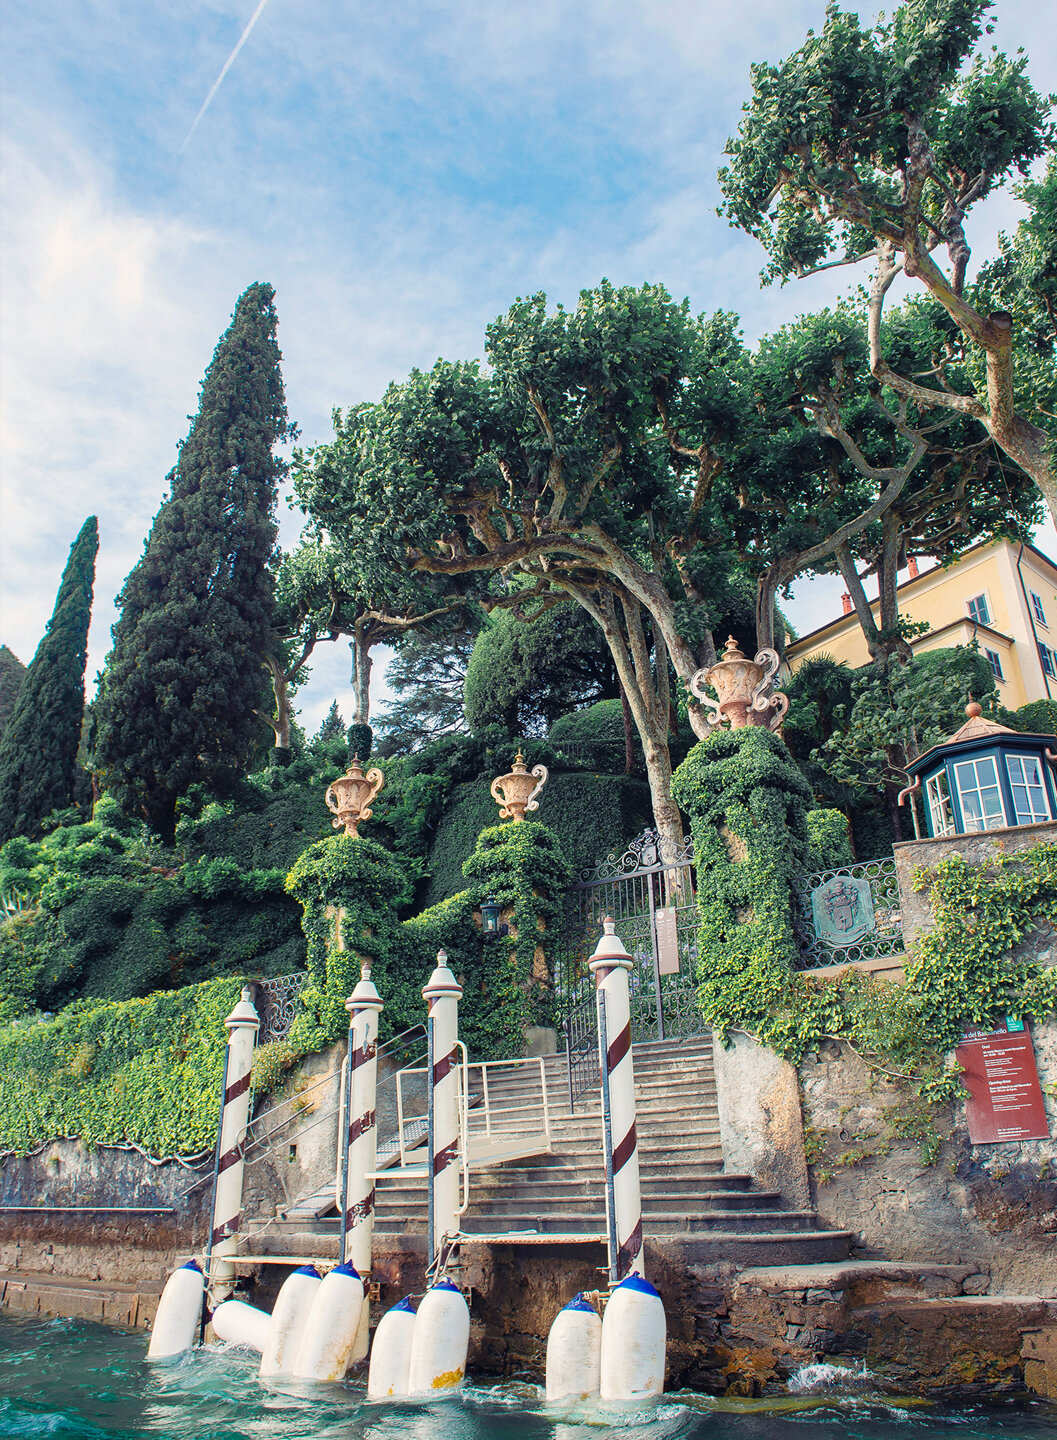 The beautiful entrance of Villa del Balbianello